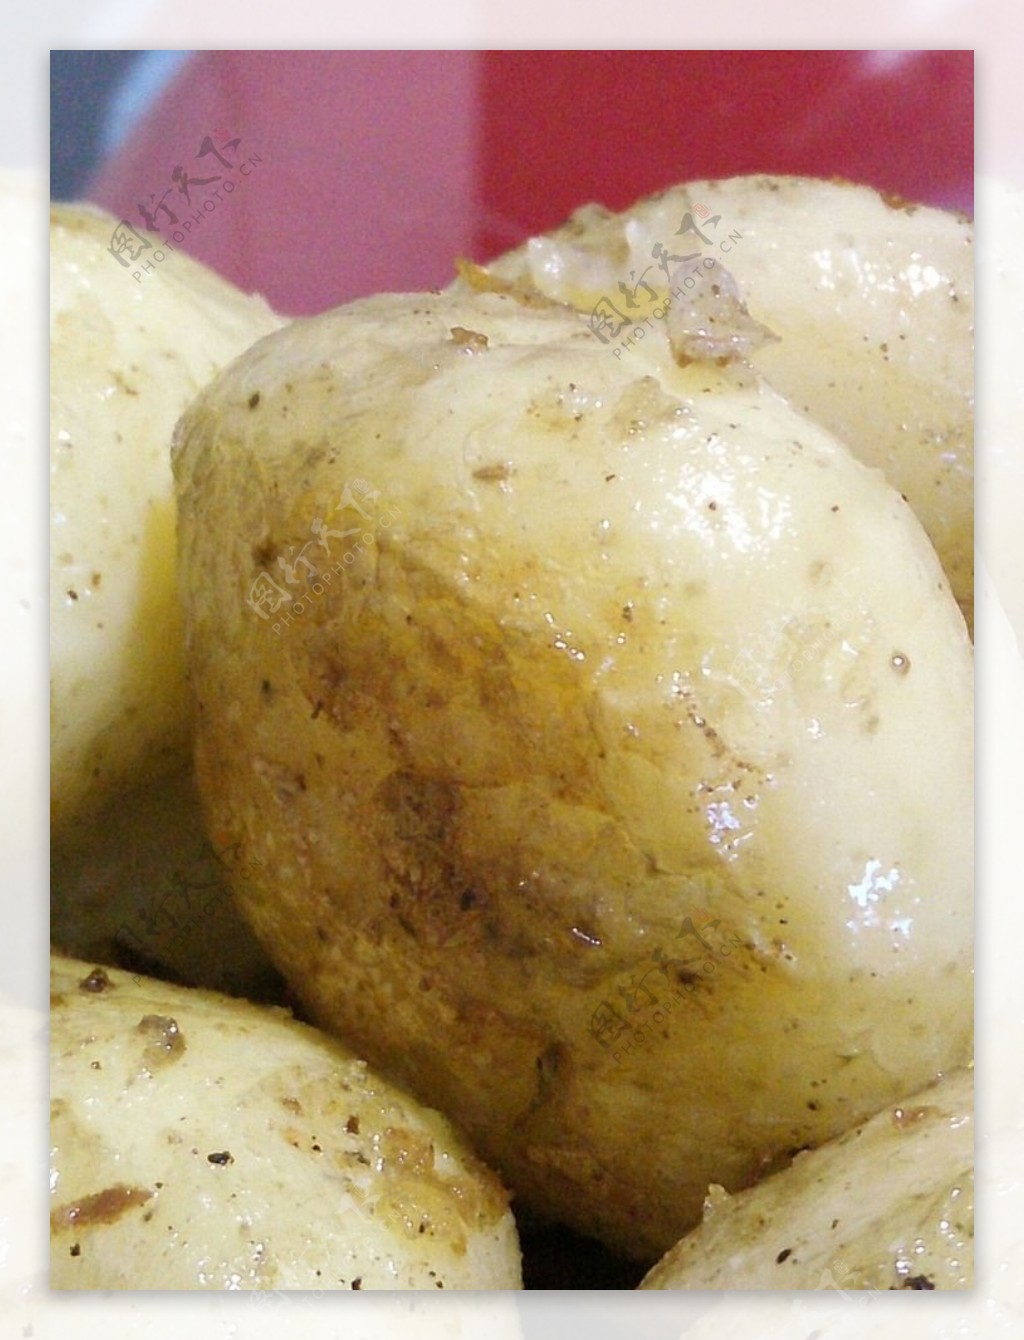 全屏新鲜马铃薯作物 红薯品种 库存照片. 图片 包括有 副食品, 食物, 特写镜头, 产物, 土豆, 原始 - 200647848